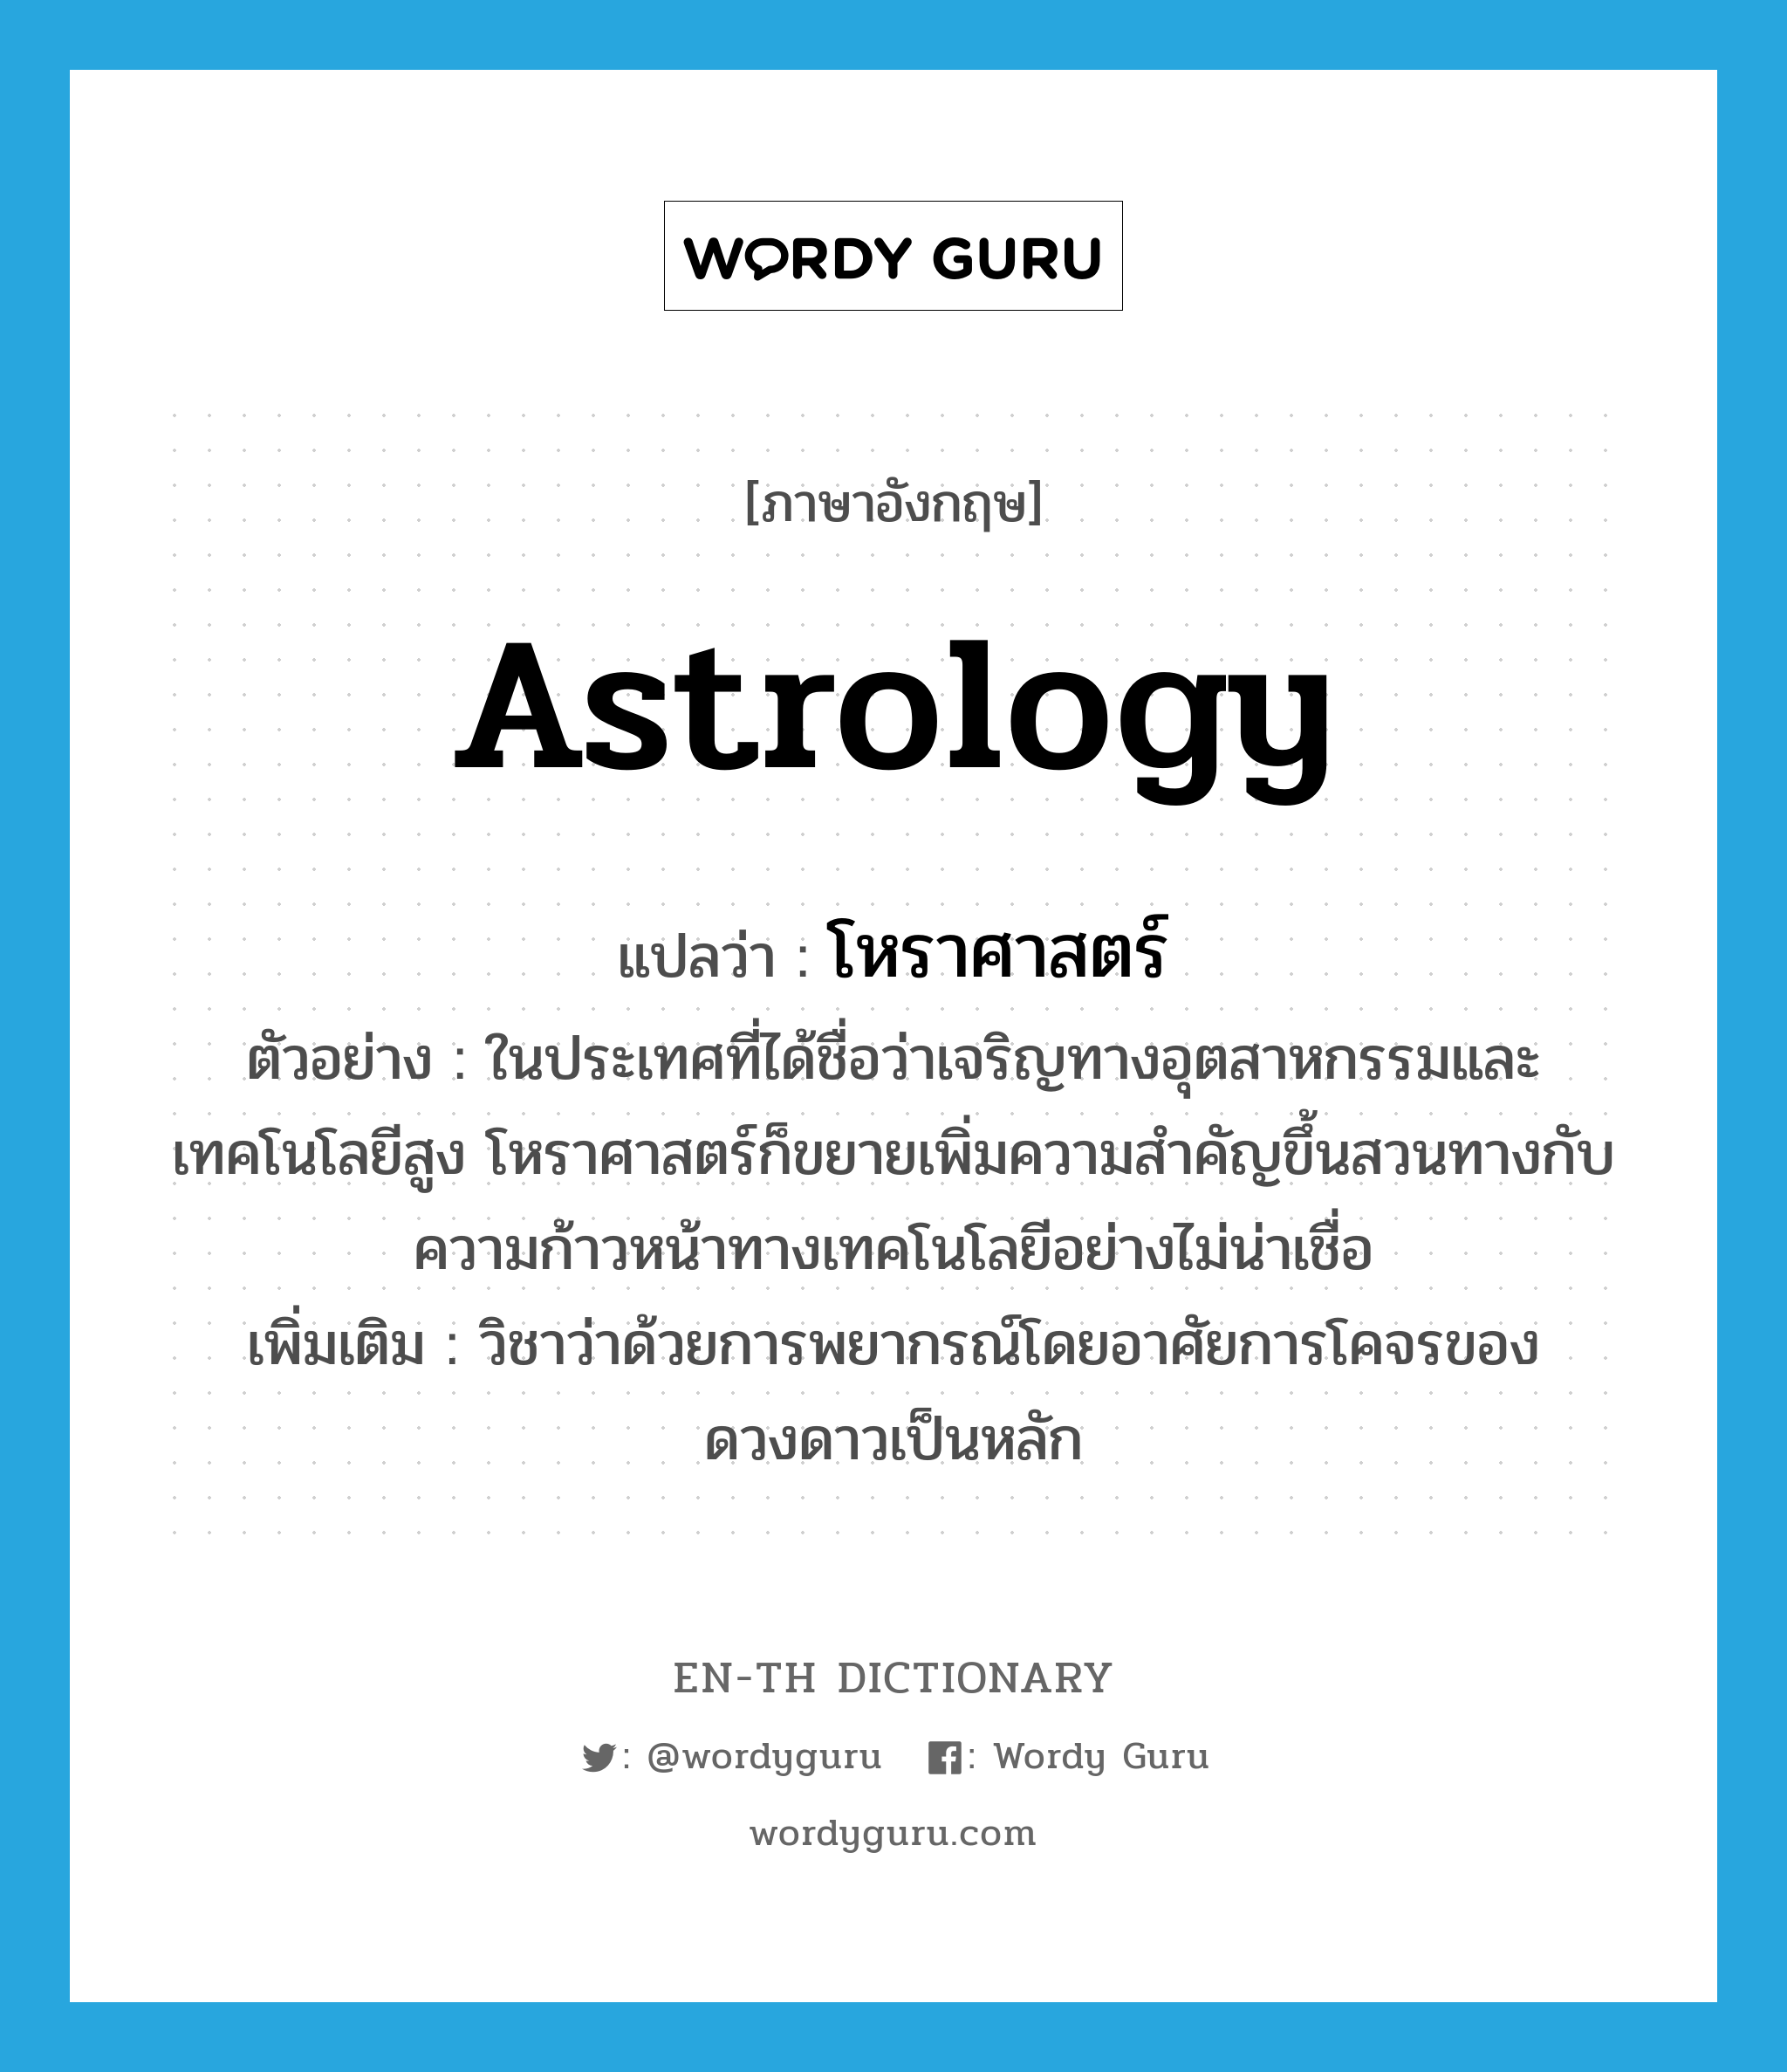 astrology แปลว่า?, คำศัพท์ภาษาอังกฤษ astrology แปลว่า โหราศาสตร์ ประเภท N ตัวอย่าง ในประเทศที่ได้ชื่อว่าเจริญทางอุตสาหกรรมและเทคโนโลยีสูง โหราศาสตร์ก็ขยายเพิ่มความสำคัญขึ้นสวนทางกับความก้าวหน้าทางเทคโนโลยีอย่างไม่น่าเชื่อ เพิ่มเติม วิชาว่าด้วยการพยากรณ์โดยอาศัยการโคจรของดวงดาวเป็นหลัก หมวด N